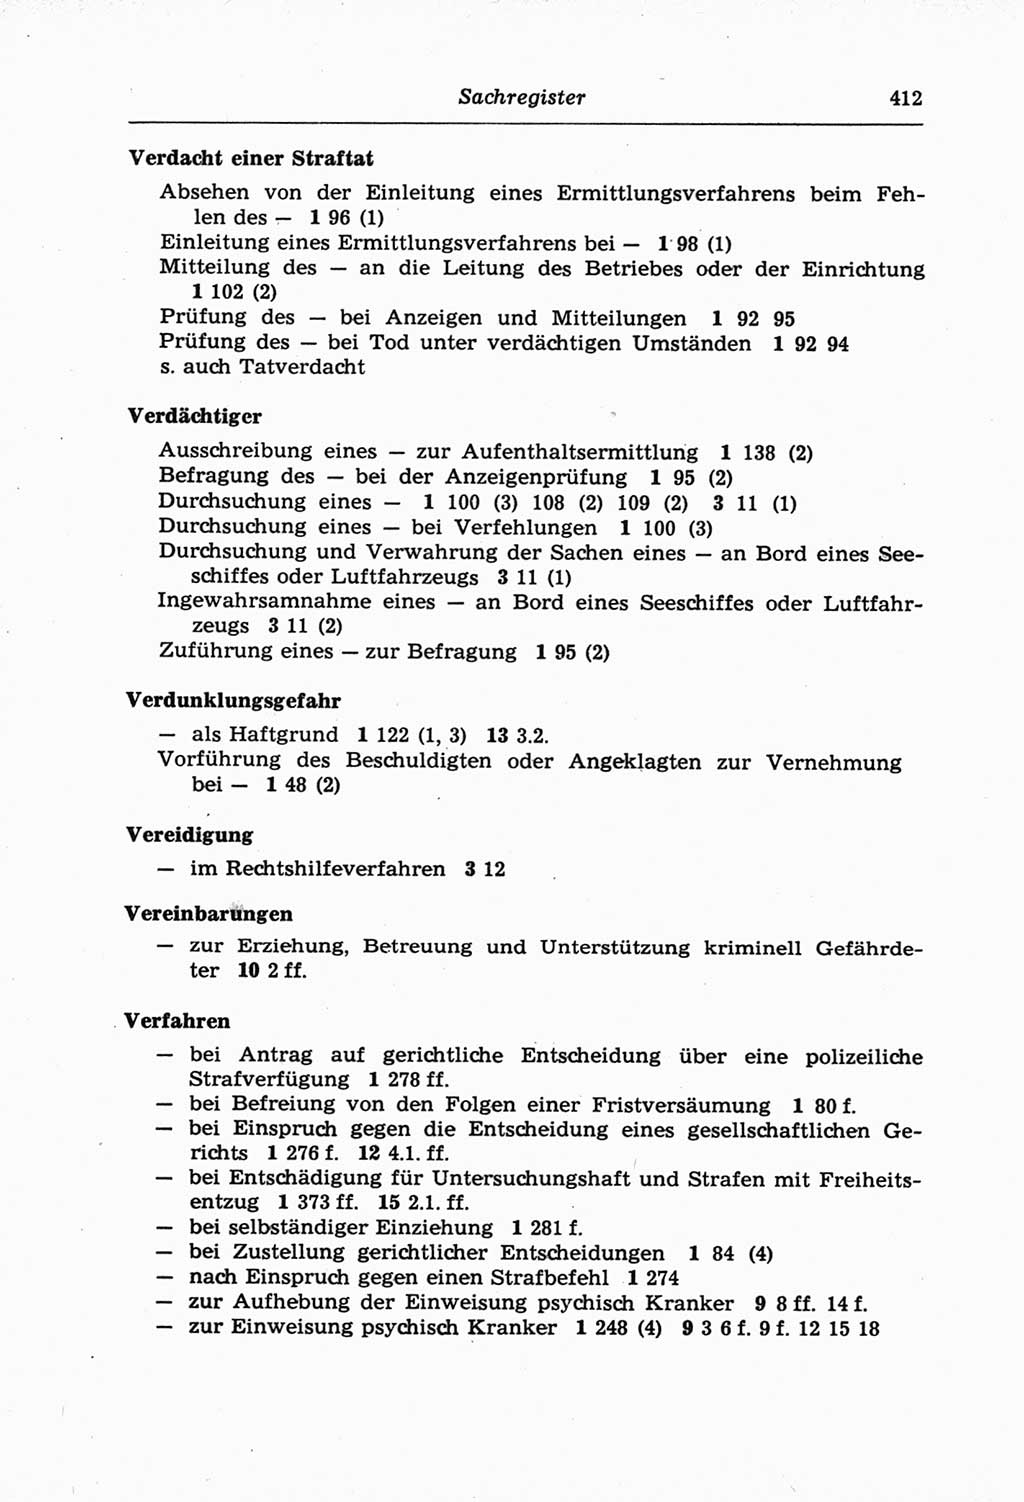 Strafprozeßordnung (StPO) der Deutschen Demokratischen Republik (DDR) und angrenzende Gesetze und Bestimmungen 1968, Seite 412 (StPO Ges. Bstgn. DDR 1968, S. 412)